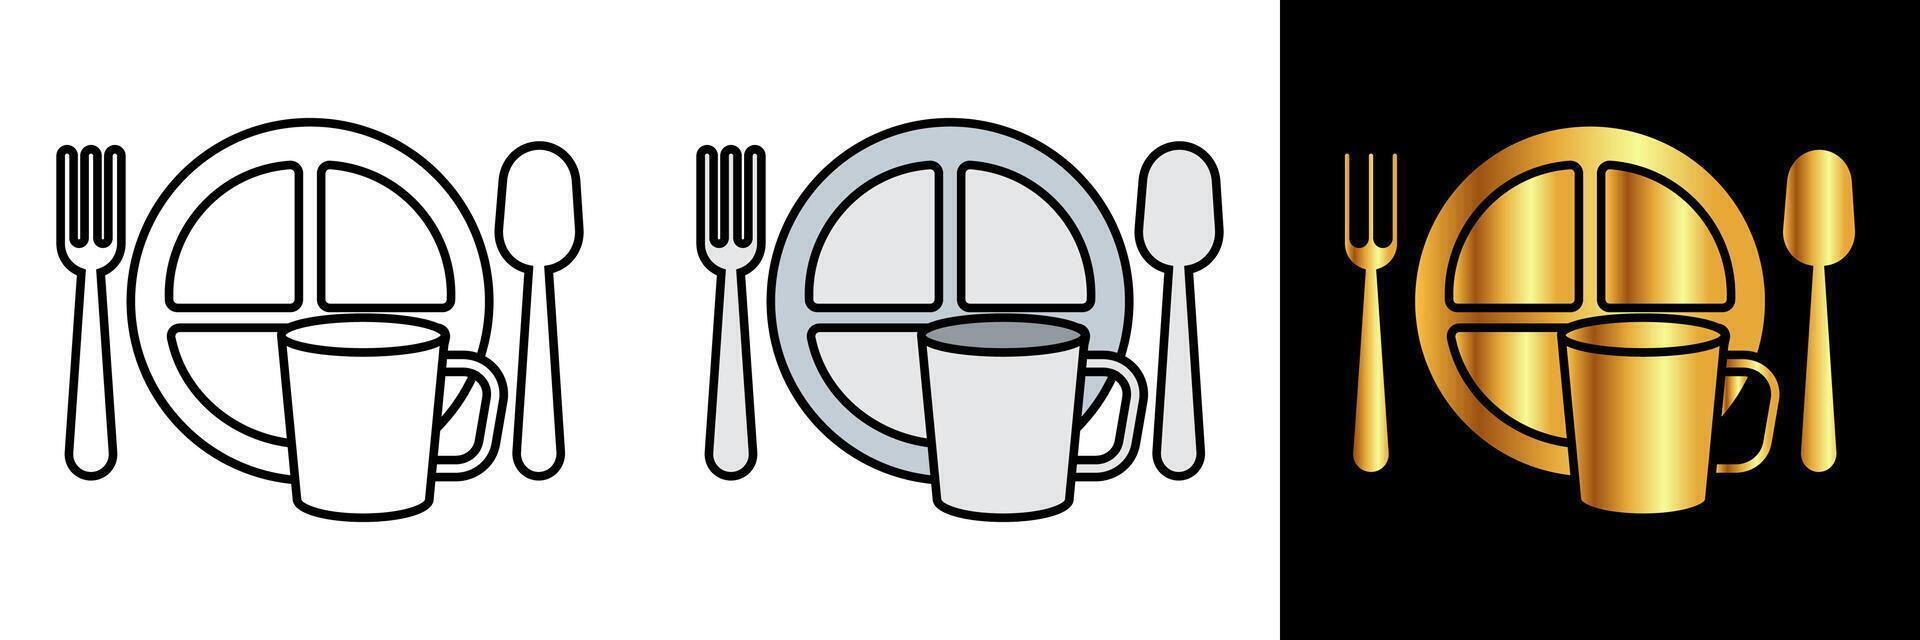 excursionismo vajilla icono, un icono representando excursionismo vajilla, simbolizando conveniencia y funcionalidad para al aire libre comida durante excursionismo y cámping aventuras vector